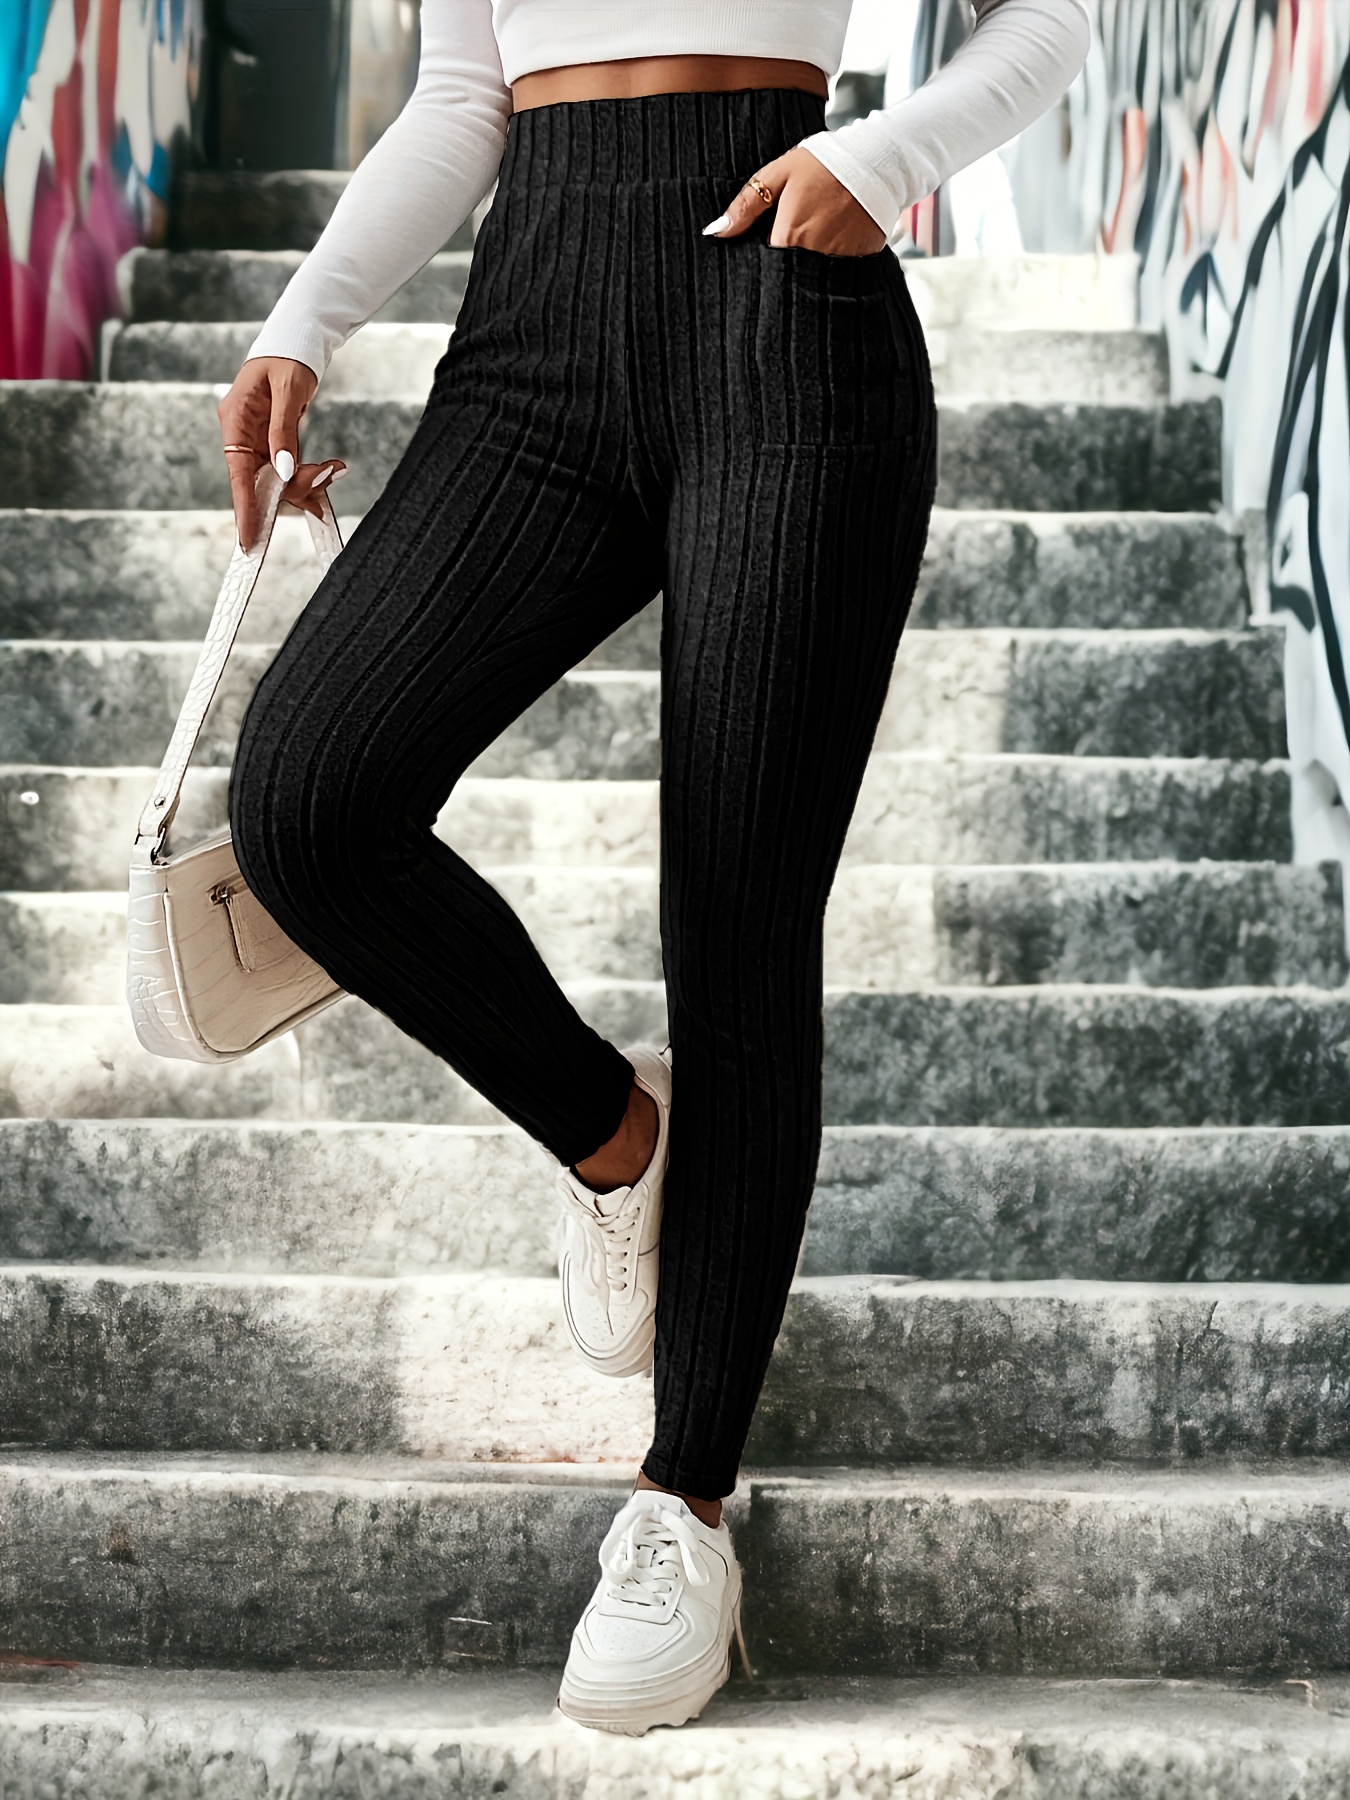 Women's knitted leggings - black